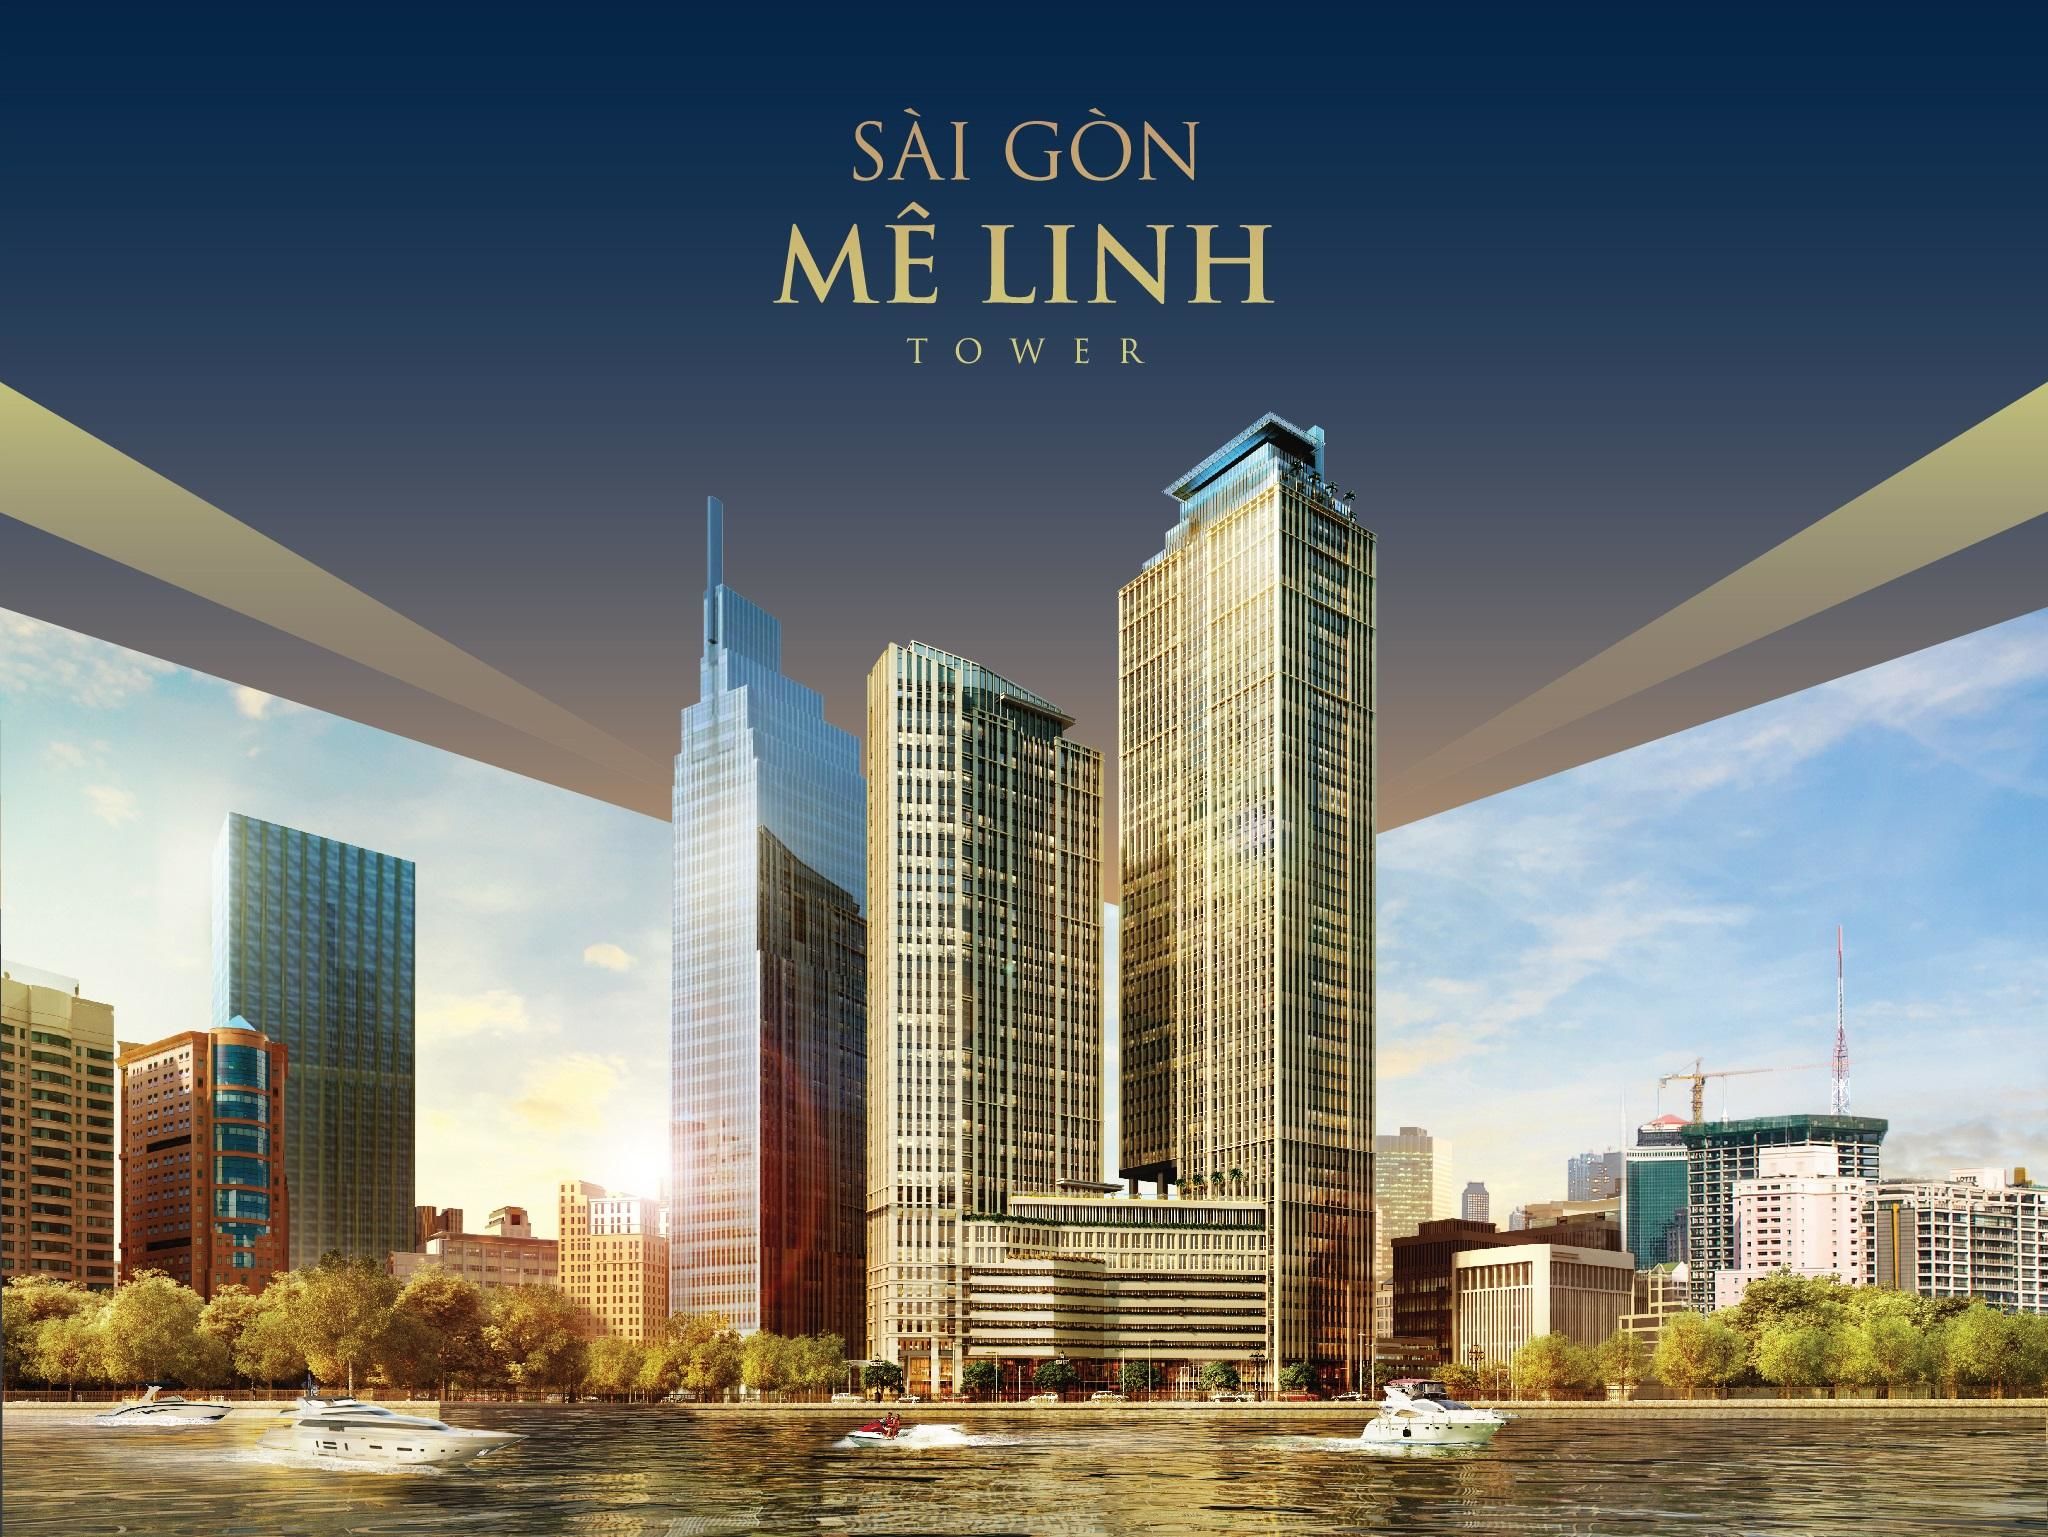 Chung cư Sài Gòn Mê Linh Tower